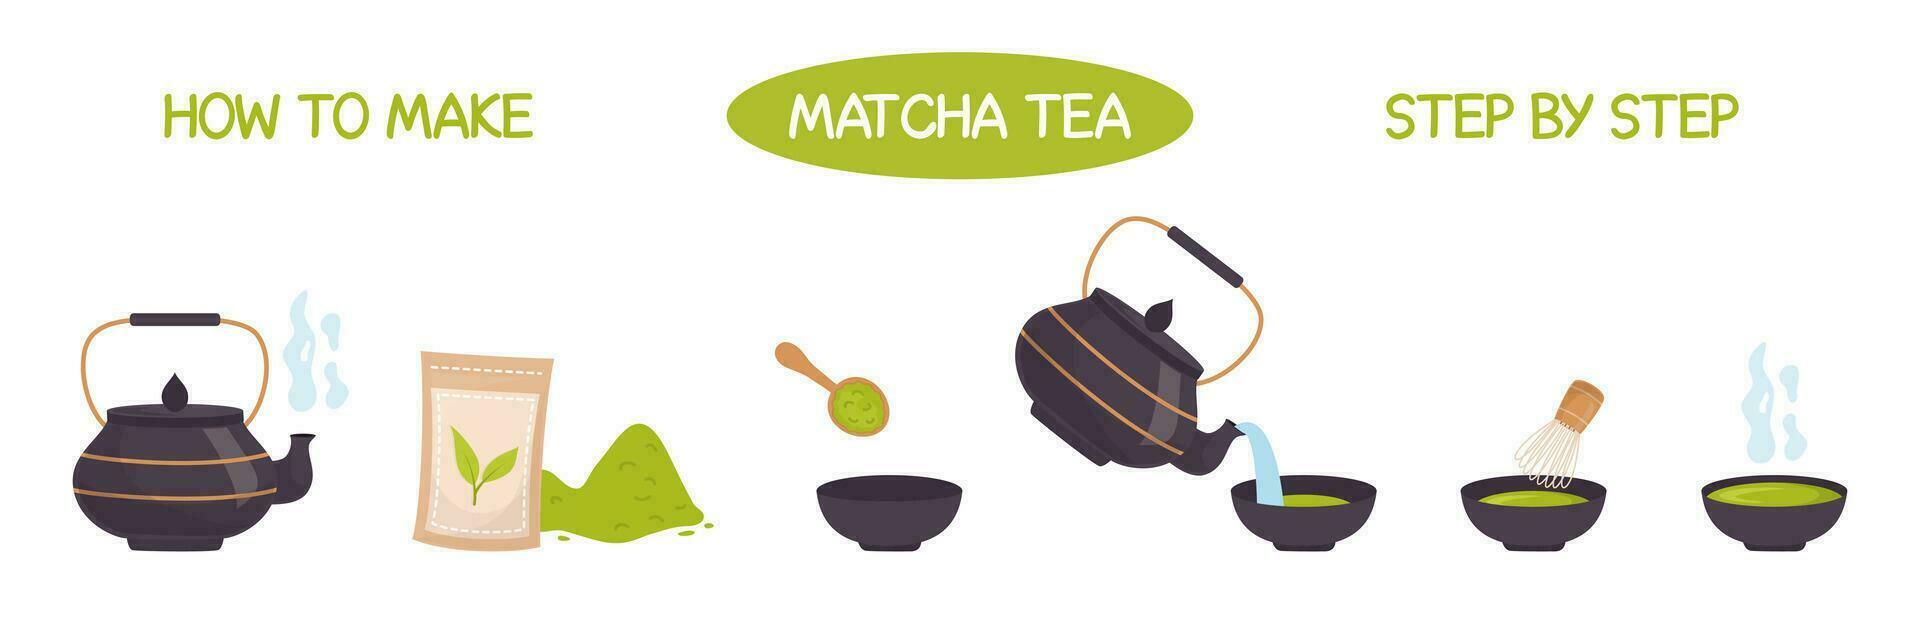 matcha té instrucción. cómo a hacer matcha ilustración. matcha polvo, cuchara, tetera, batidor, tradicional taza en plano estilo. vector